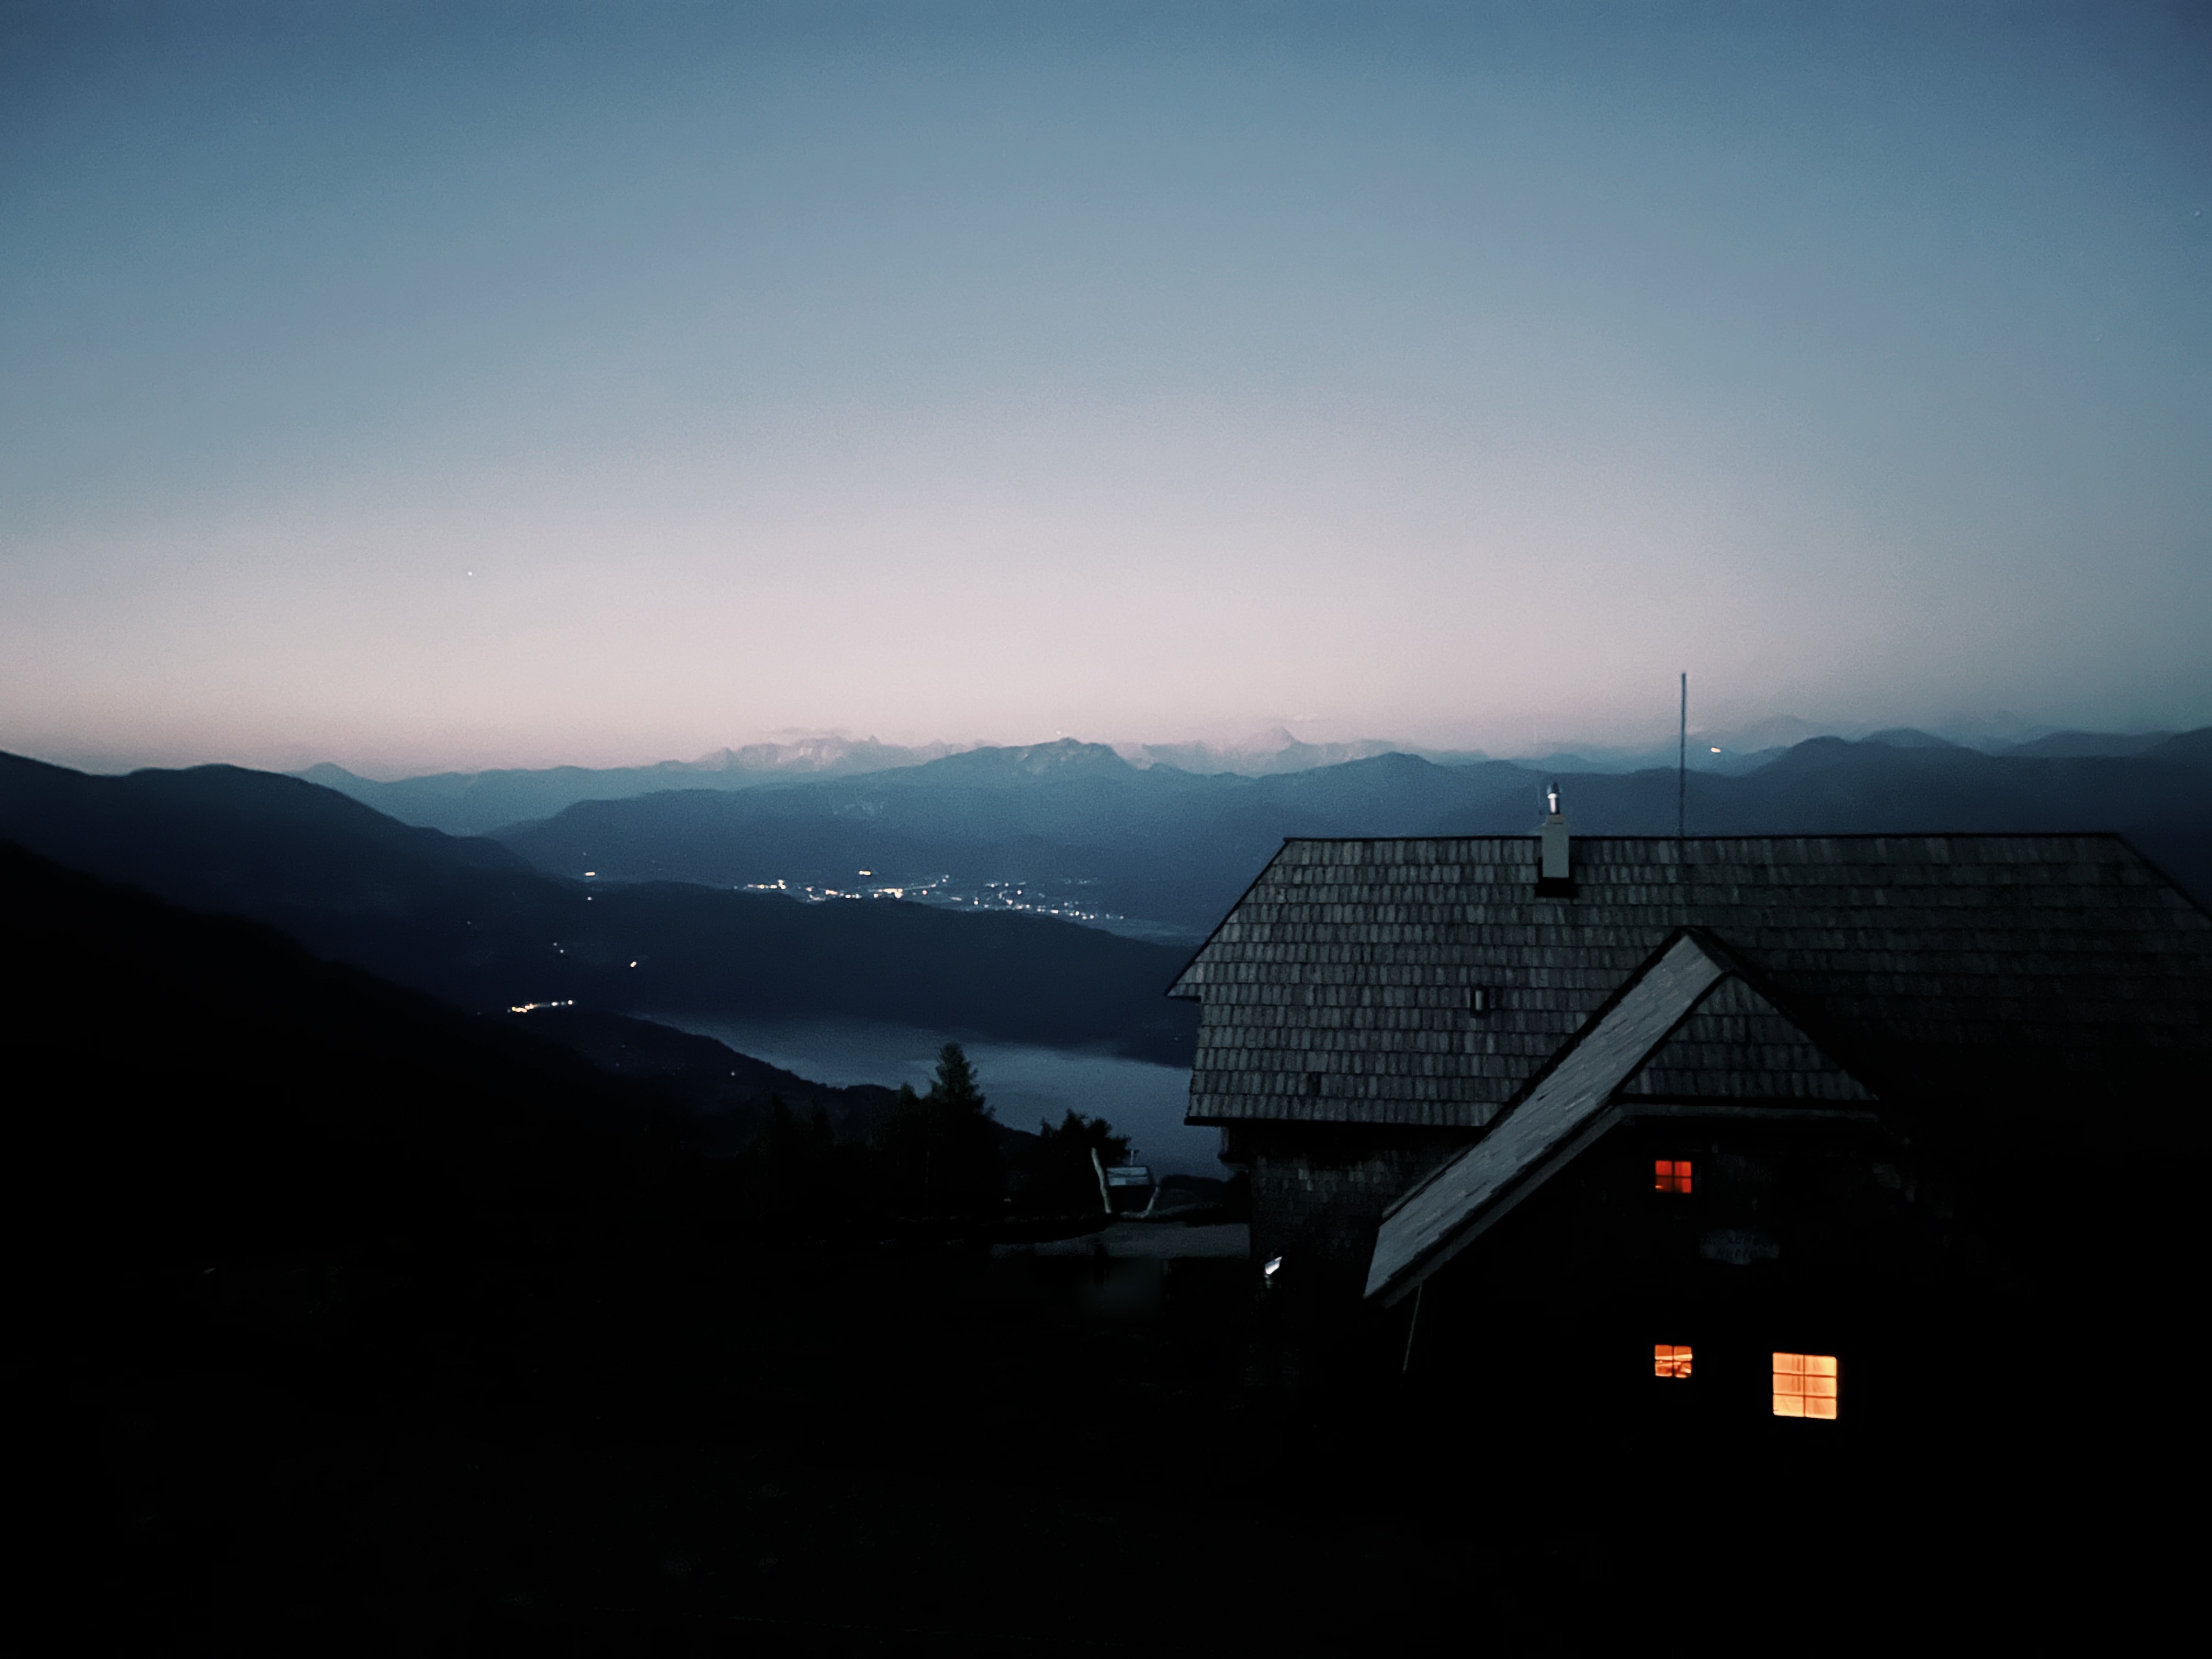 Alexanderalm at Dawn, a mountain hut on the Alpe Adria Trail